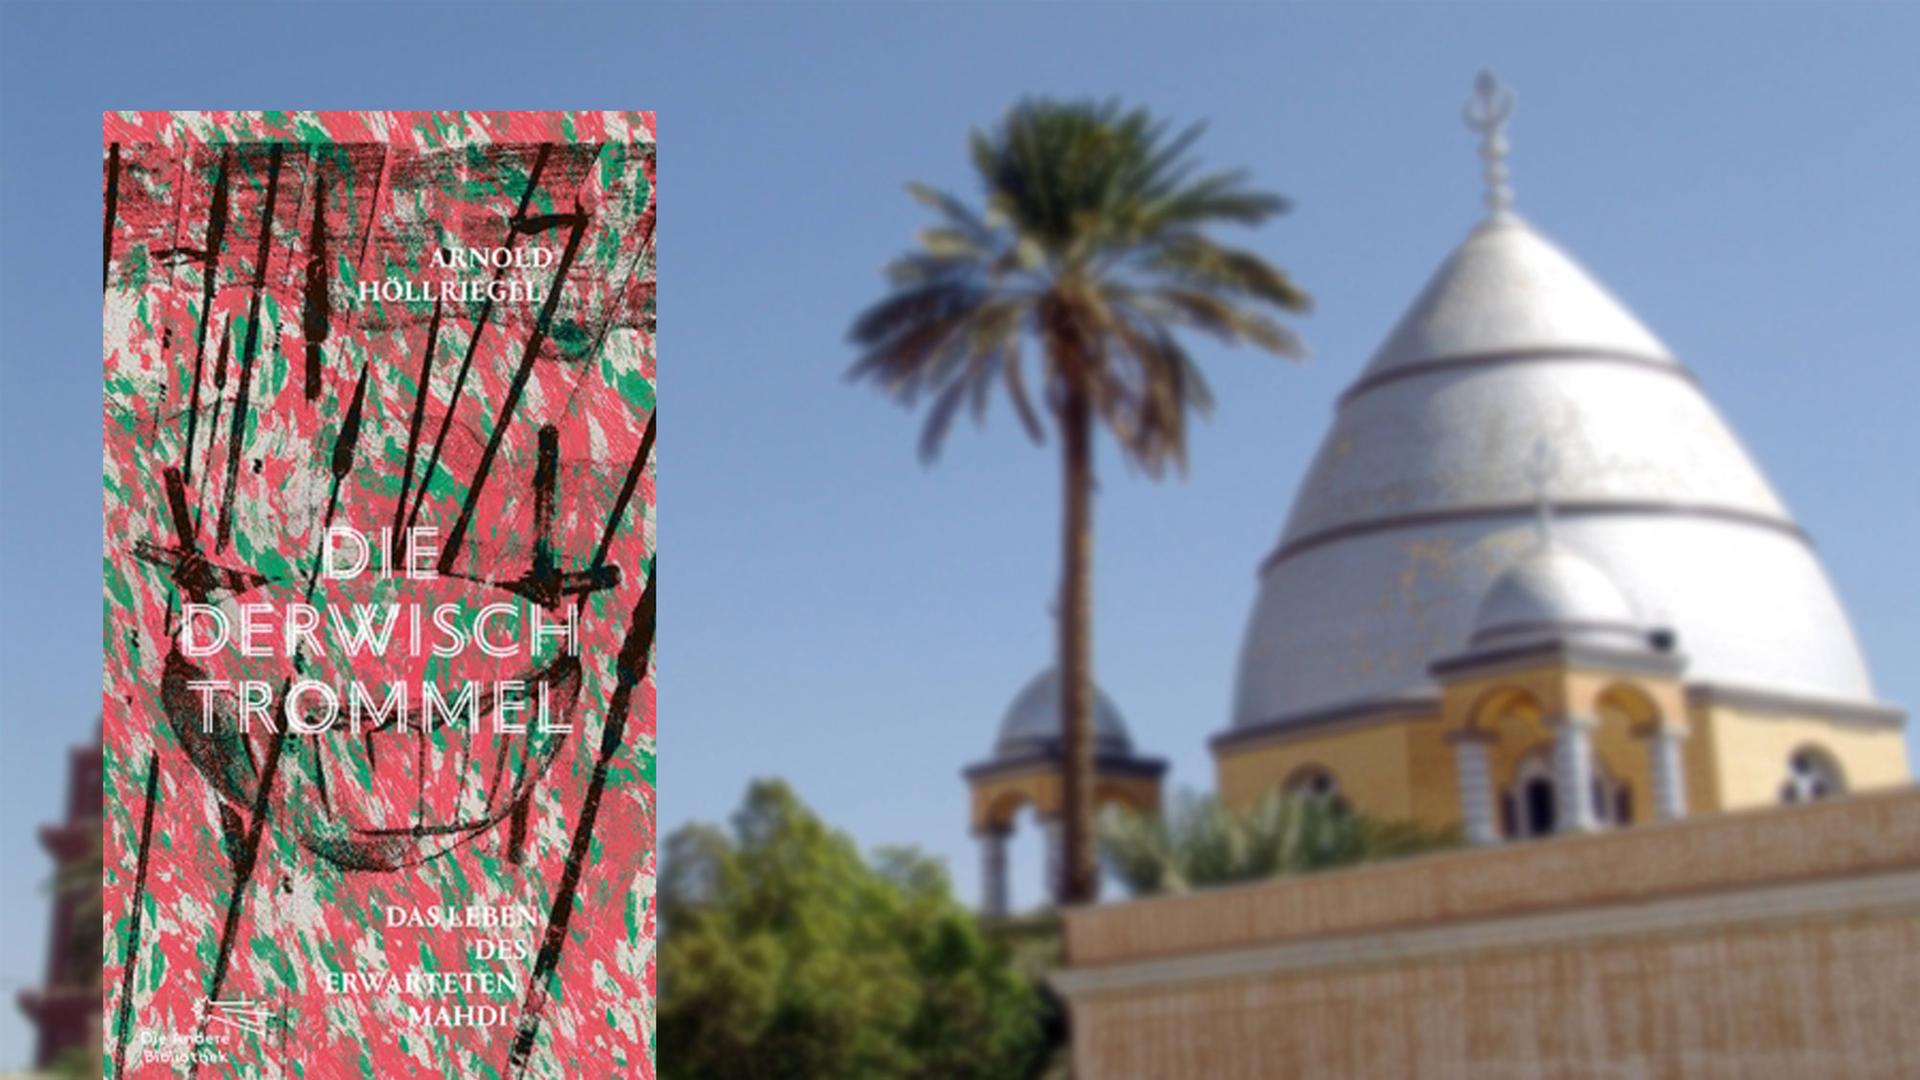 Buchcover: Die Derwischtrommel, im Hintergrund: Grabmal des Mahdi in Khartum, Sudan.